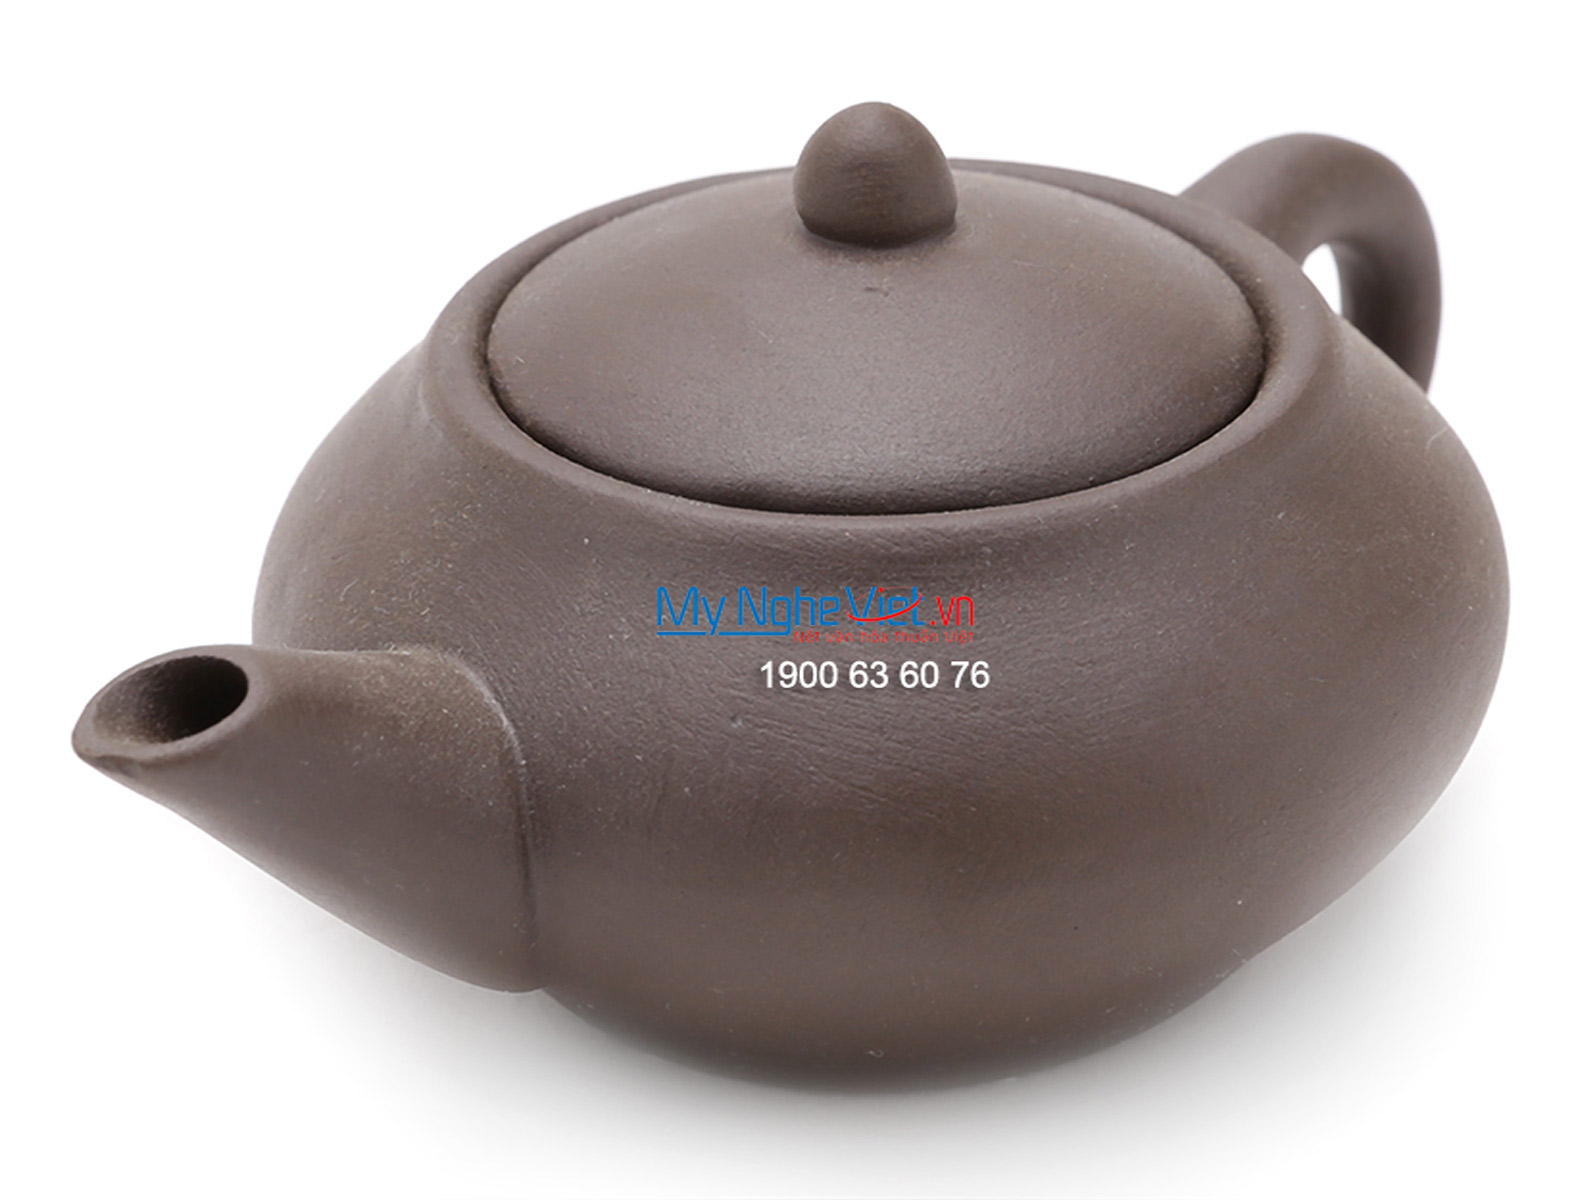 Bộ bình trà Bát Tràng độc ẩm gốm Bát Tràng MNV-TS047-1 (nhiều mẫu)